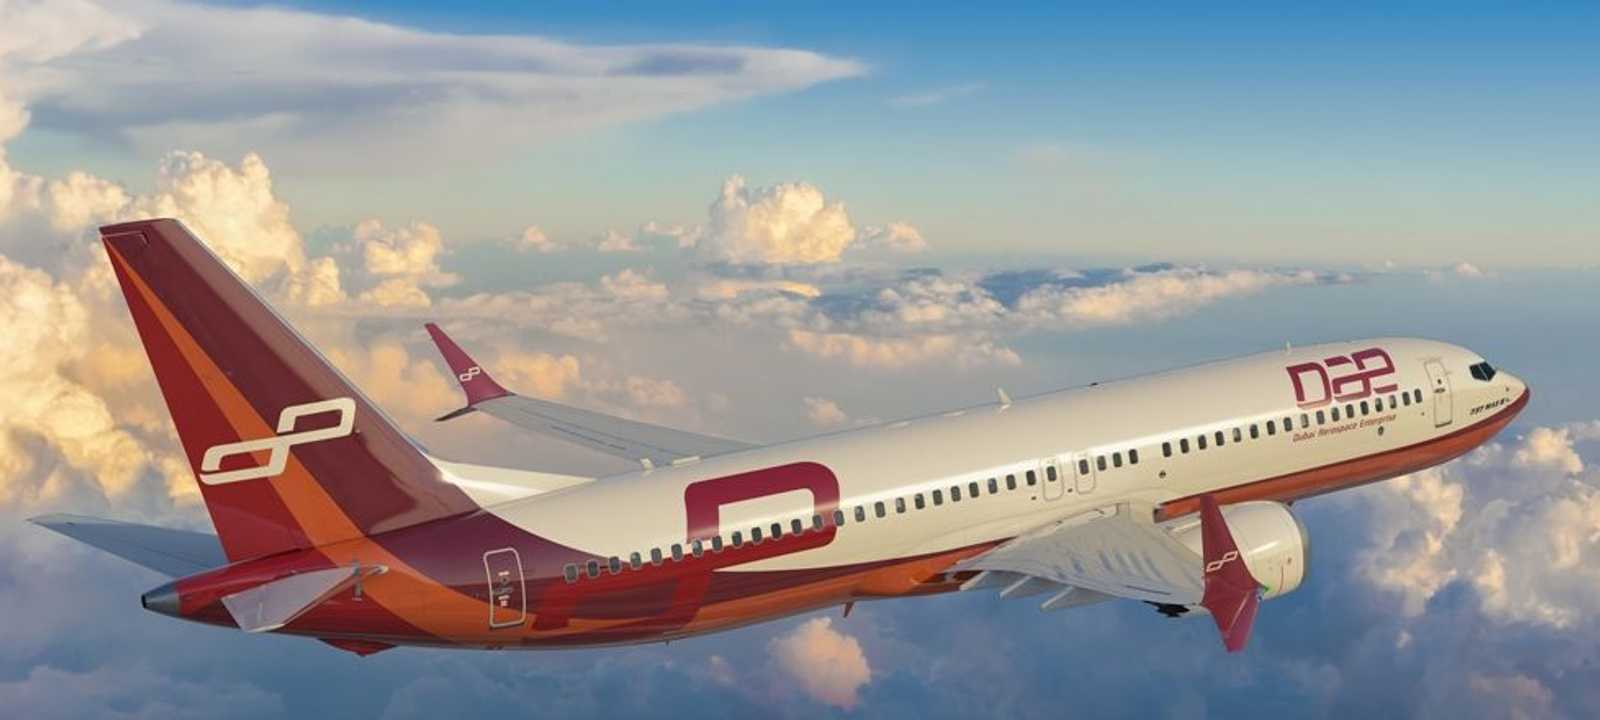 طائرة تحمل شعار "دبي لصناعات الطيران"